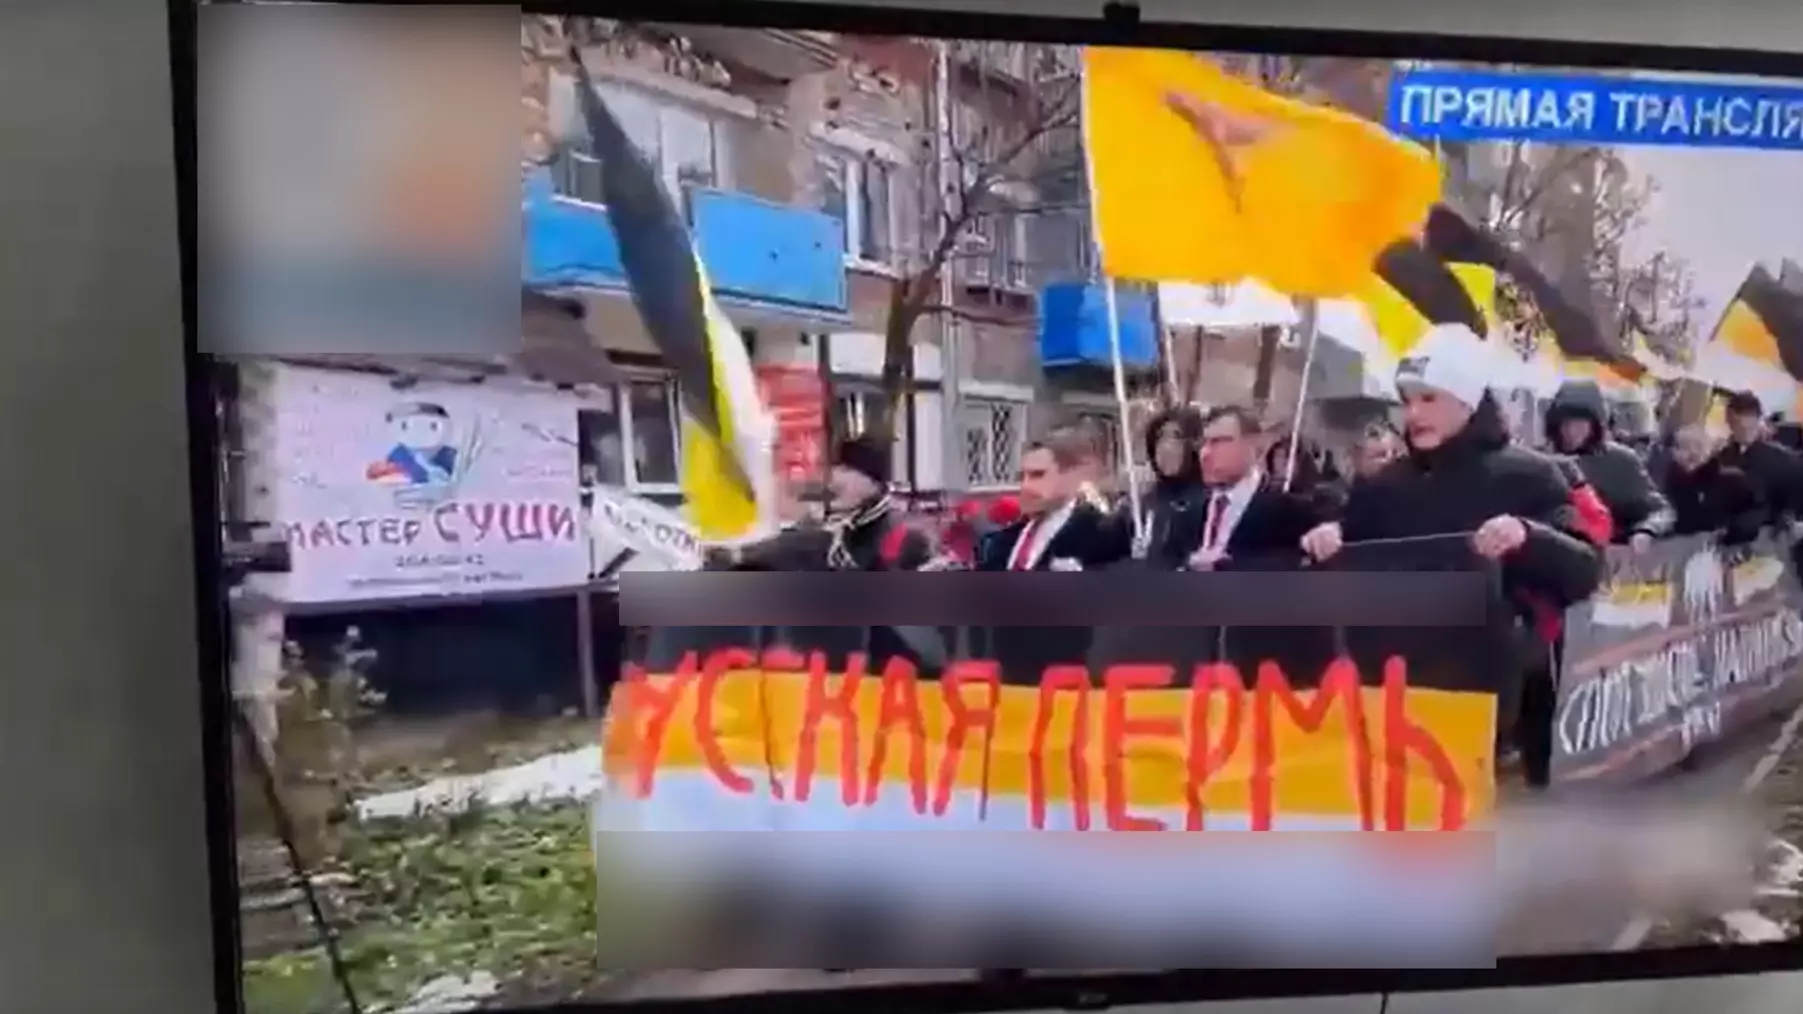 Националисты взломали трансляцию «Уфанета» в Башкирии во время Парада Победы